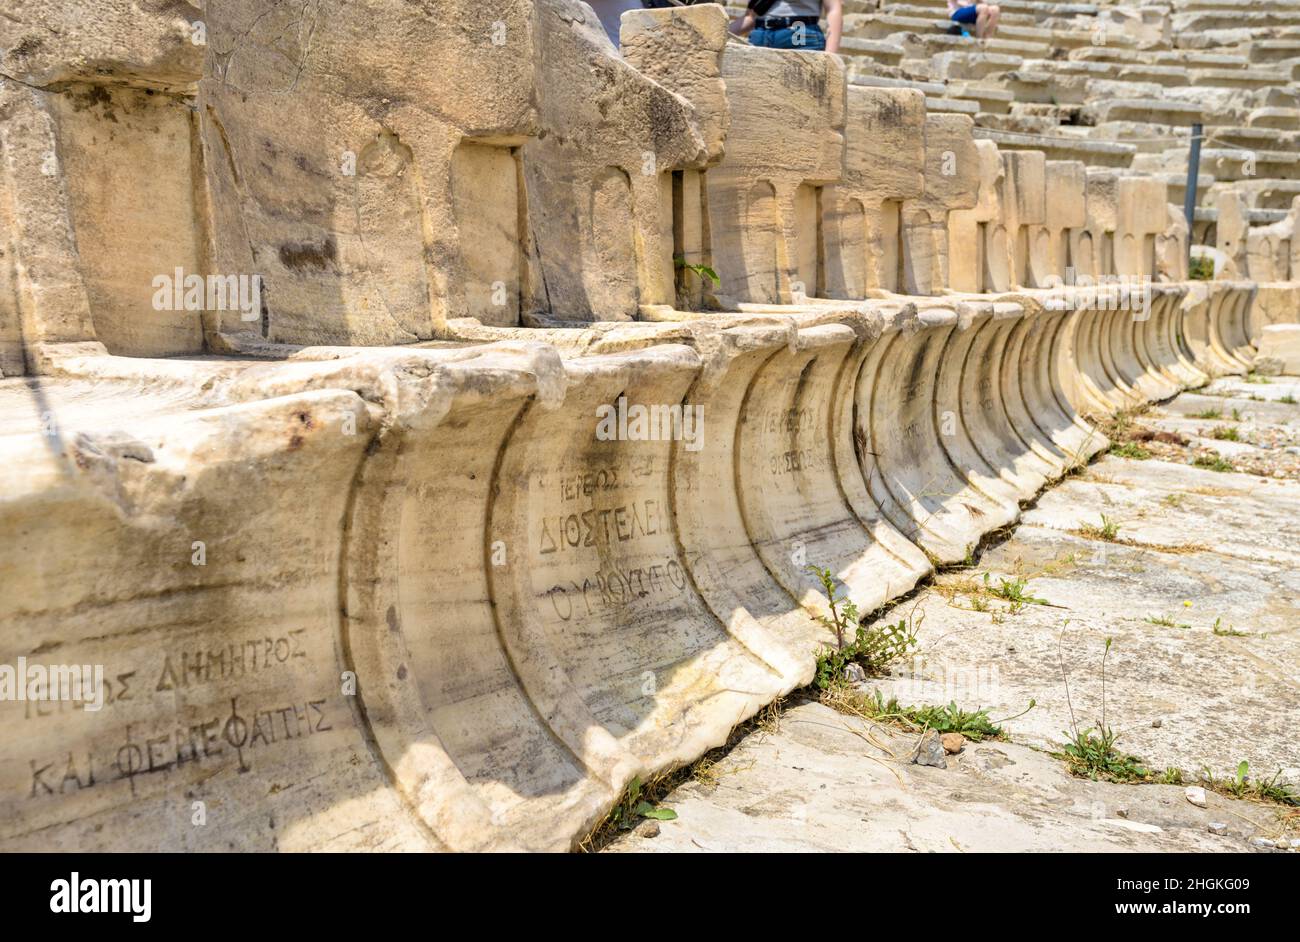 Sedili in pietra del Teatro di Dioniso vicino Acropoli, Atene, Grecia, Europa. Sedie in marmo con iscrizione nomi proprietari. Antico monumento greco vicino-u Foto Stock